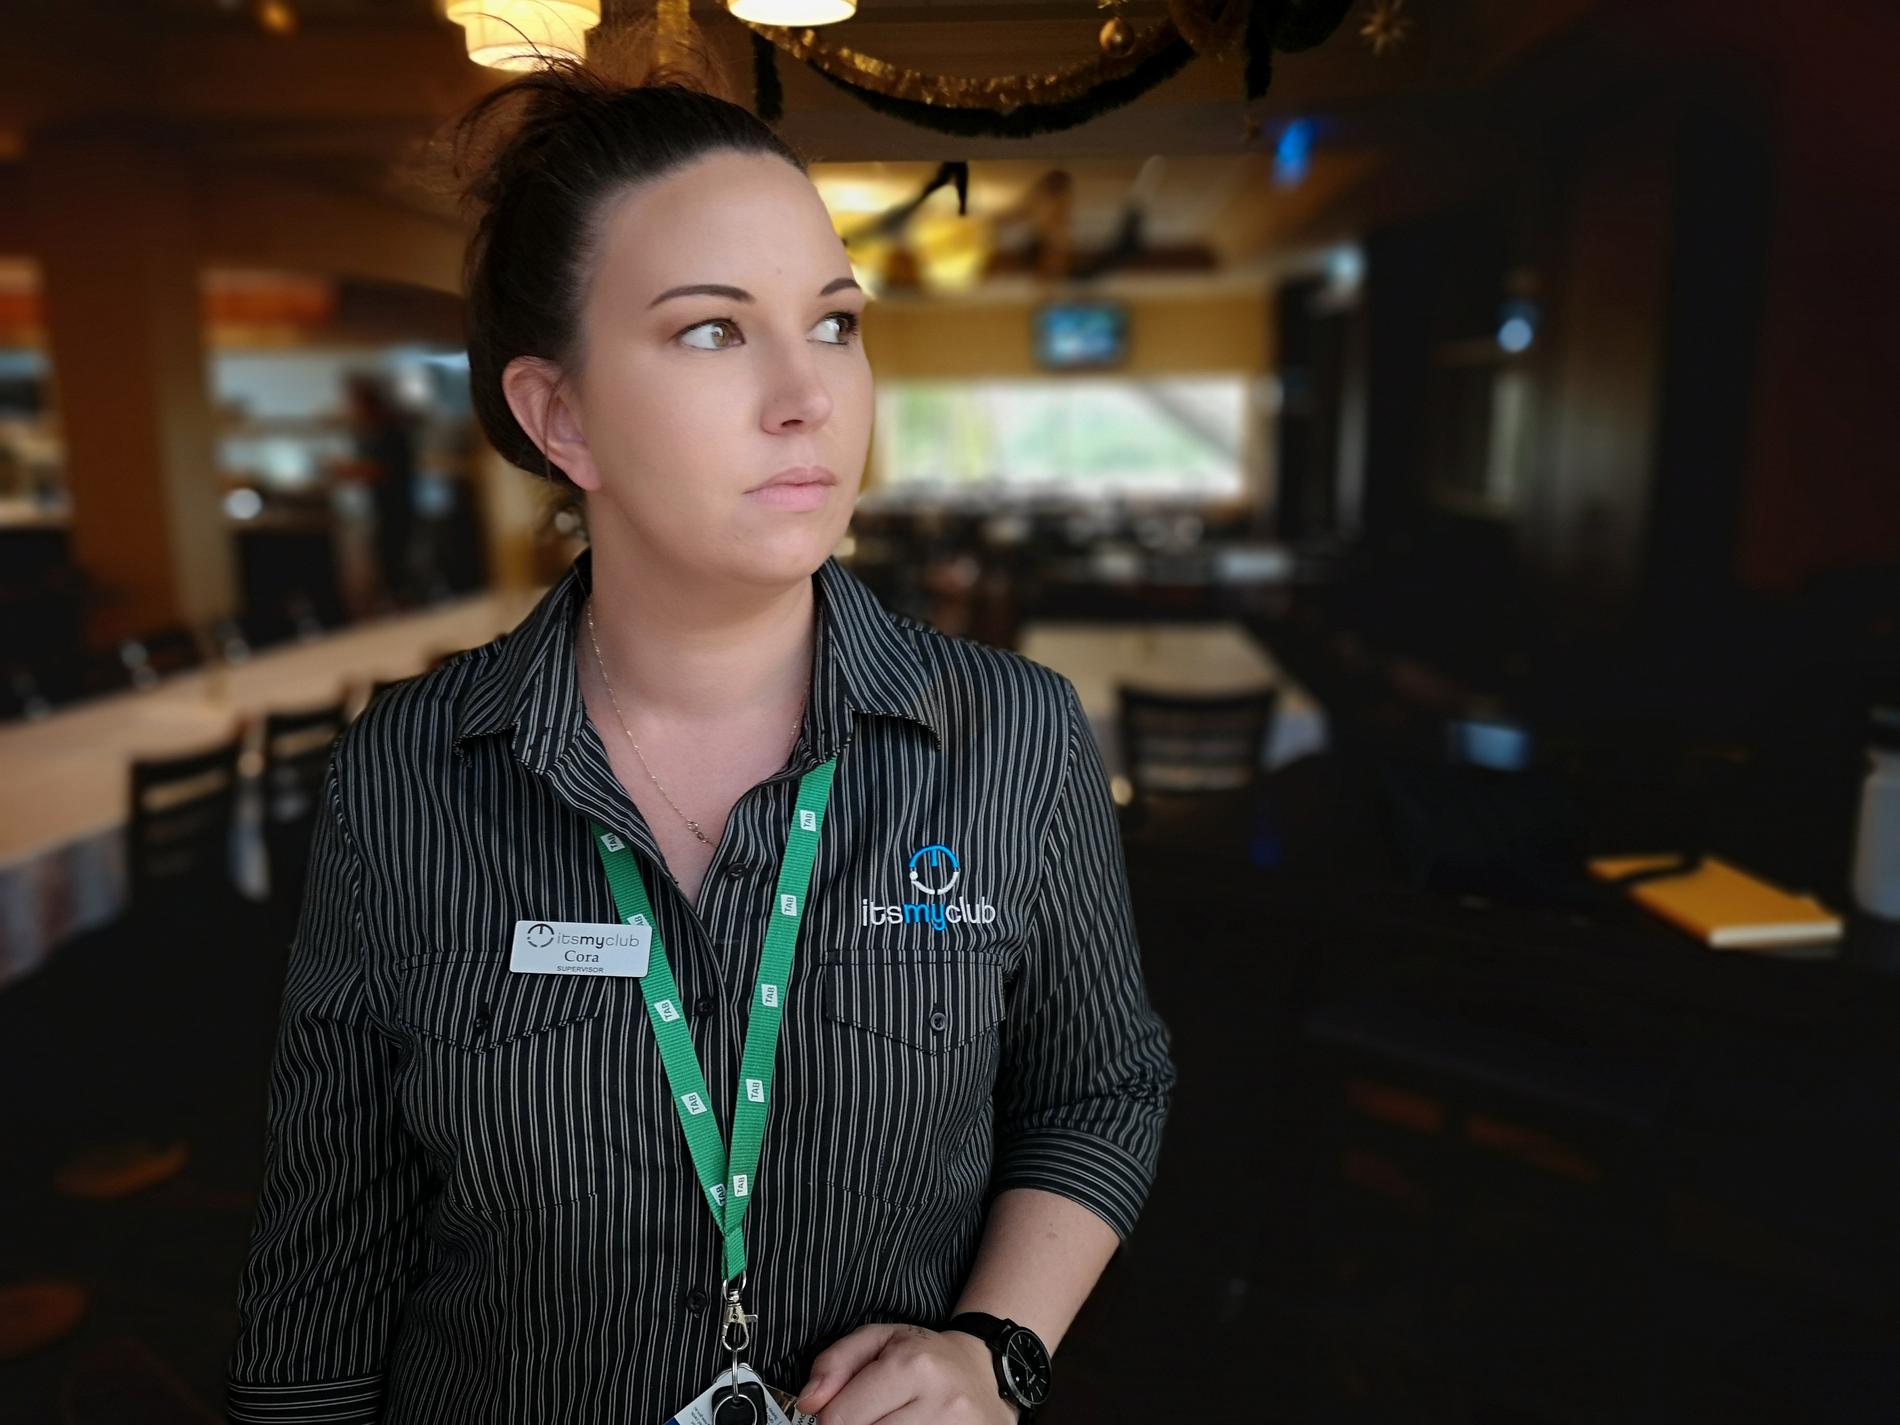 Cora Reece, restaurangchef på bowlingklubben som fungerar som evakueringscenter i Bomaderry. I delar av Australien råder katastroftillstånd på grund av okontrollerade skogsbränder. Detta har tvingat tiotusentals i områdena att evakuera. Till evakueringscentret i Bomaderry söker boende såväl som husdjur skydd undan lågorna.